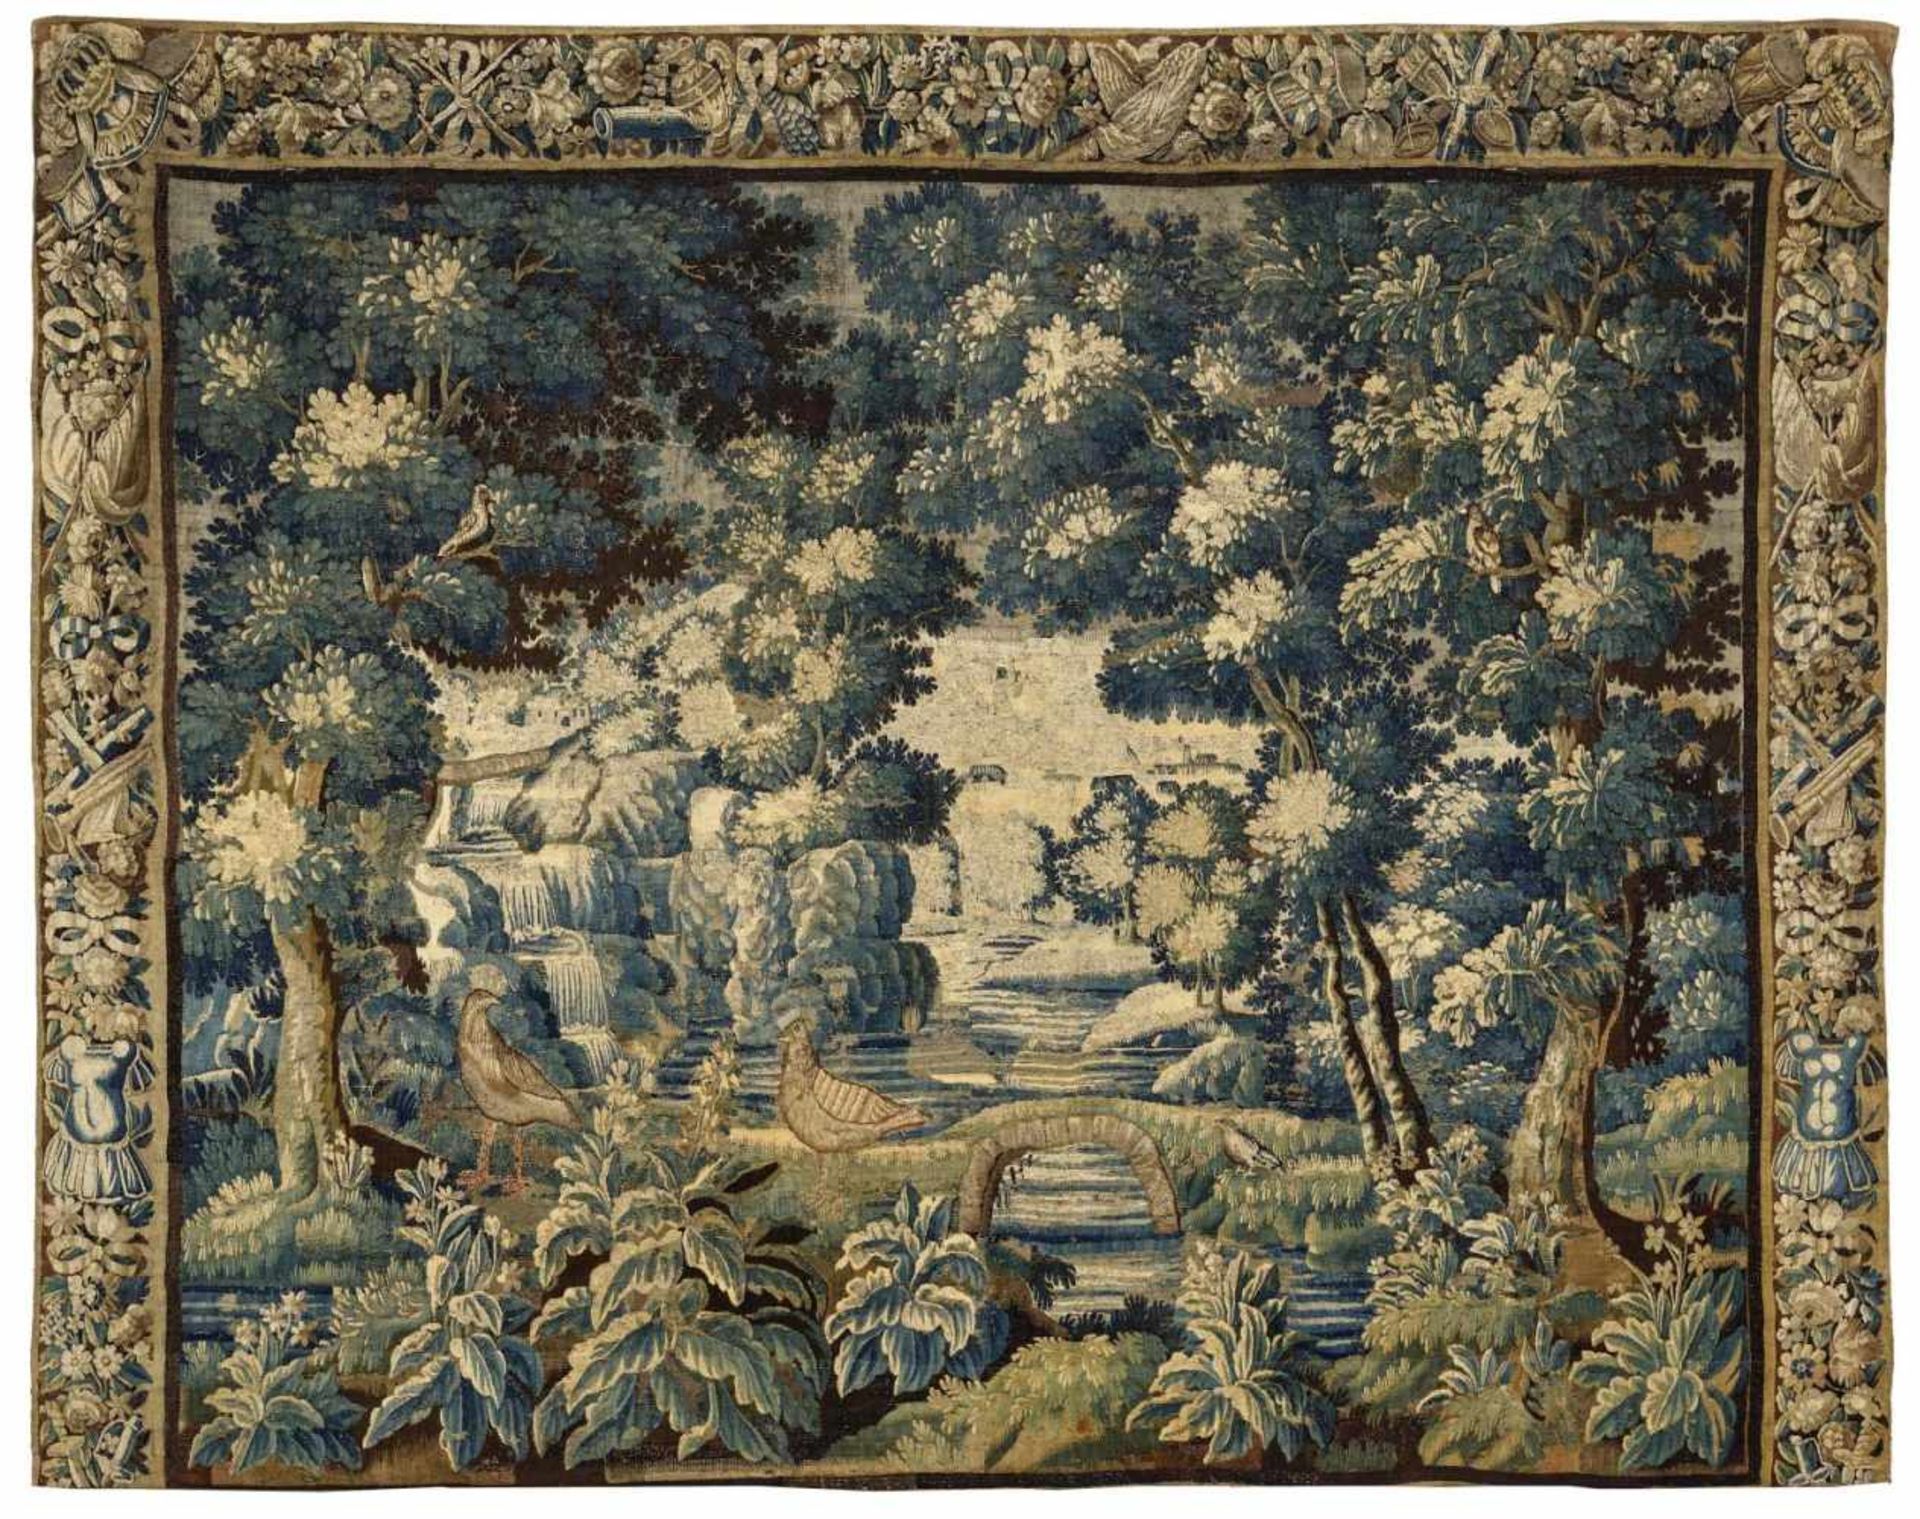 TapisserieAubusson, um 1700 Wolle, Seide. Waldlichtung mit Wasserfall und Ausblick auf Landschaft